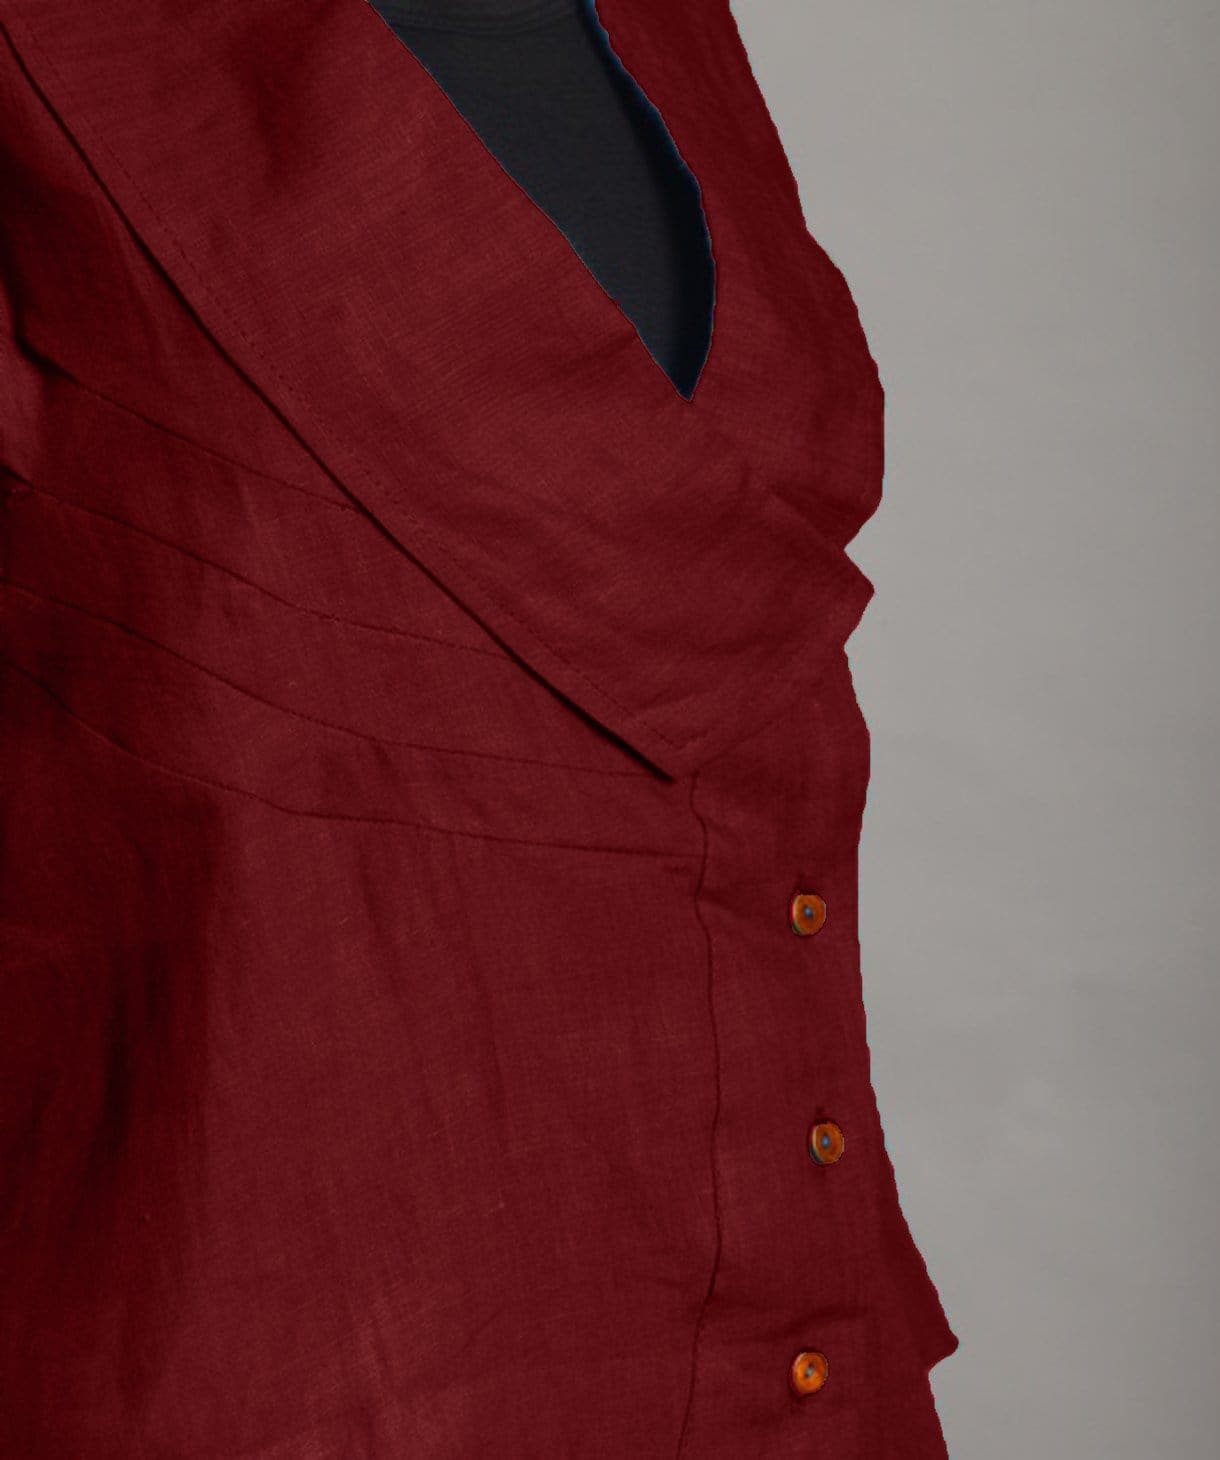 Maroon Linen Jacket Style Tunic - Uptownie